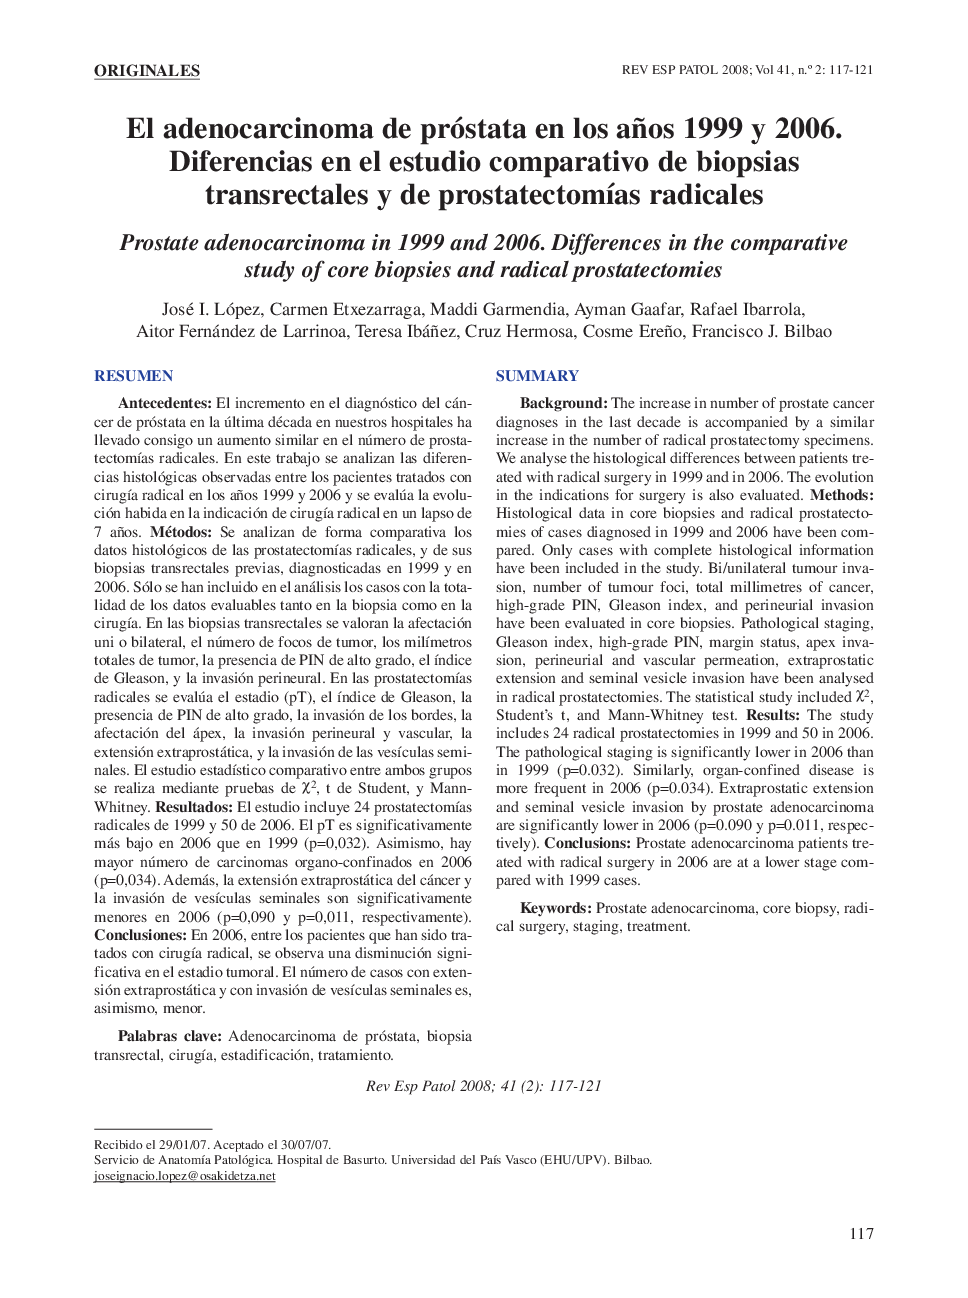 El adenocarcinoma de próstata en los años 1999 y 2006. Diferencias en el estudio comparativo de biopsias transrectales y de prostatectomÃ­as radicales